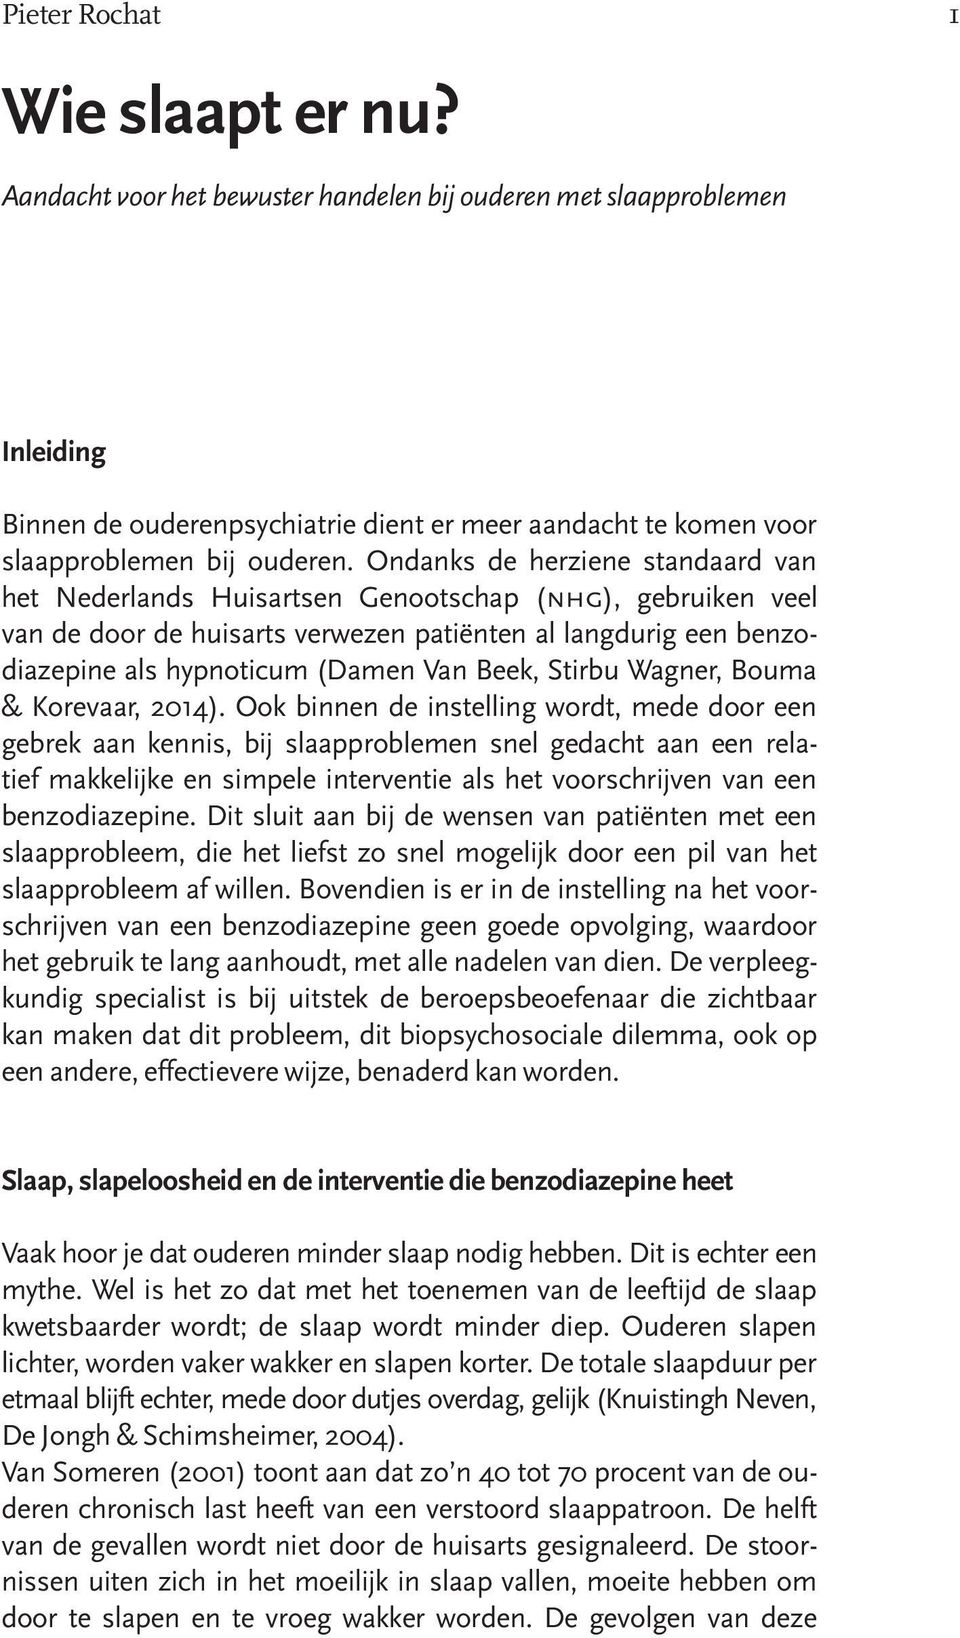 Ondanks de herziene standaard van het Nederlands Huisartsen Genootschap (nhg), gebruiken veel van de door de huisarts verwezen patiënten al langdurig een benzodiazepine als hypnoticum (Damen Van